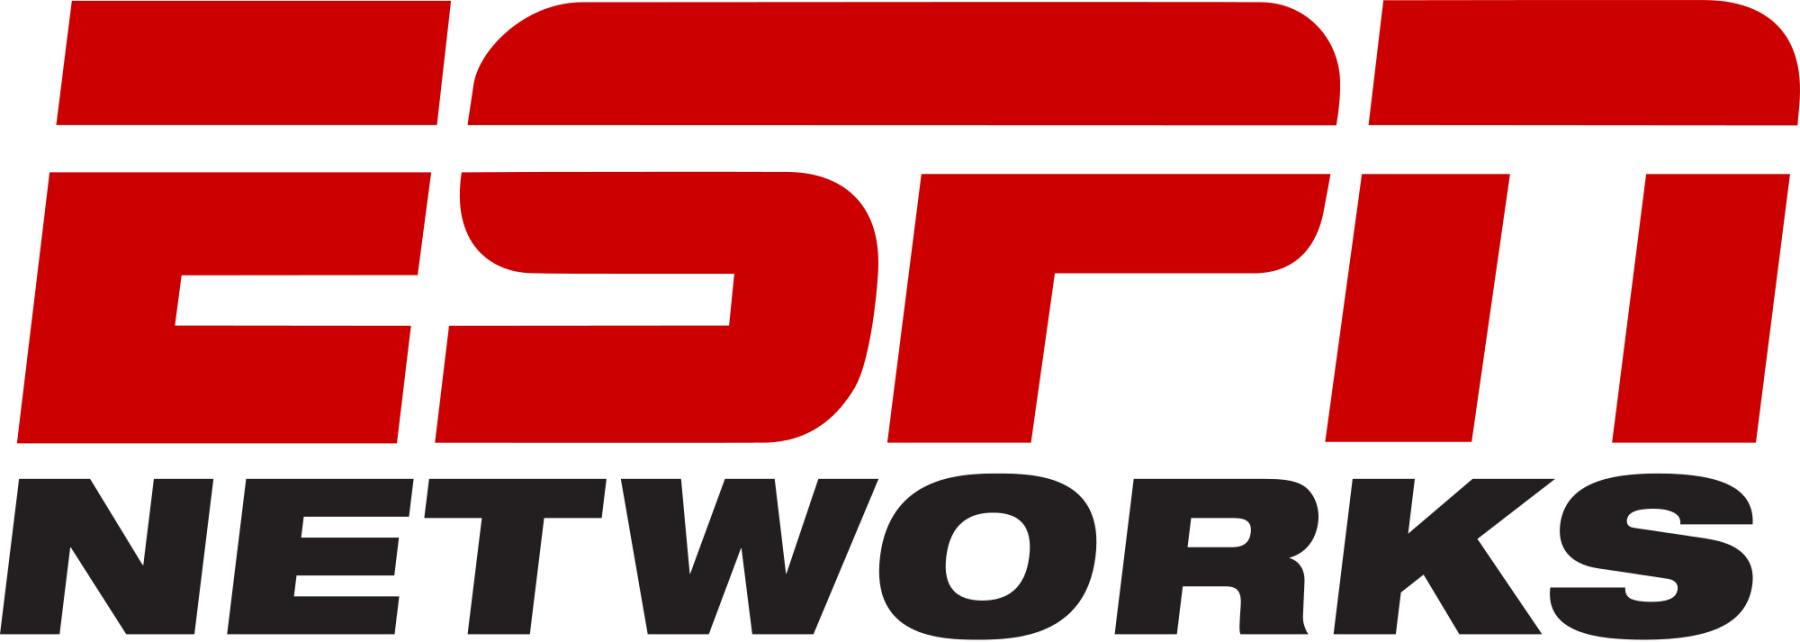 ESPN_Networks_logo.svg_